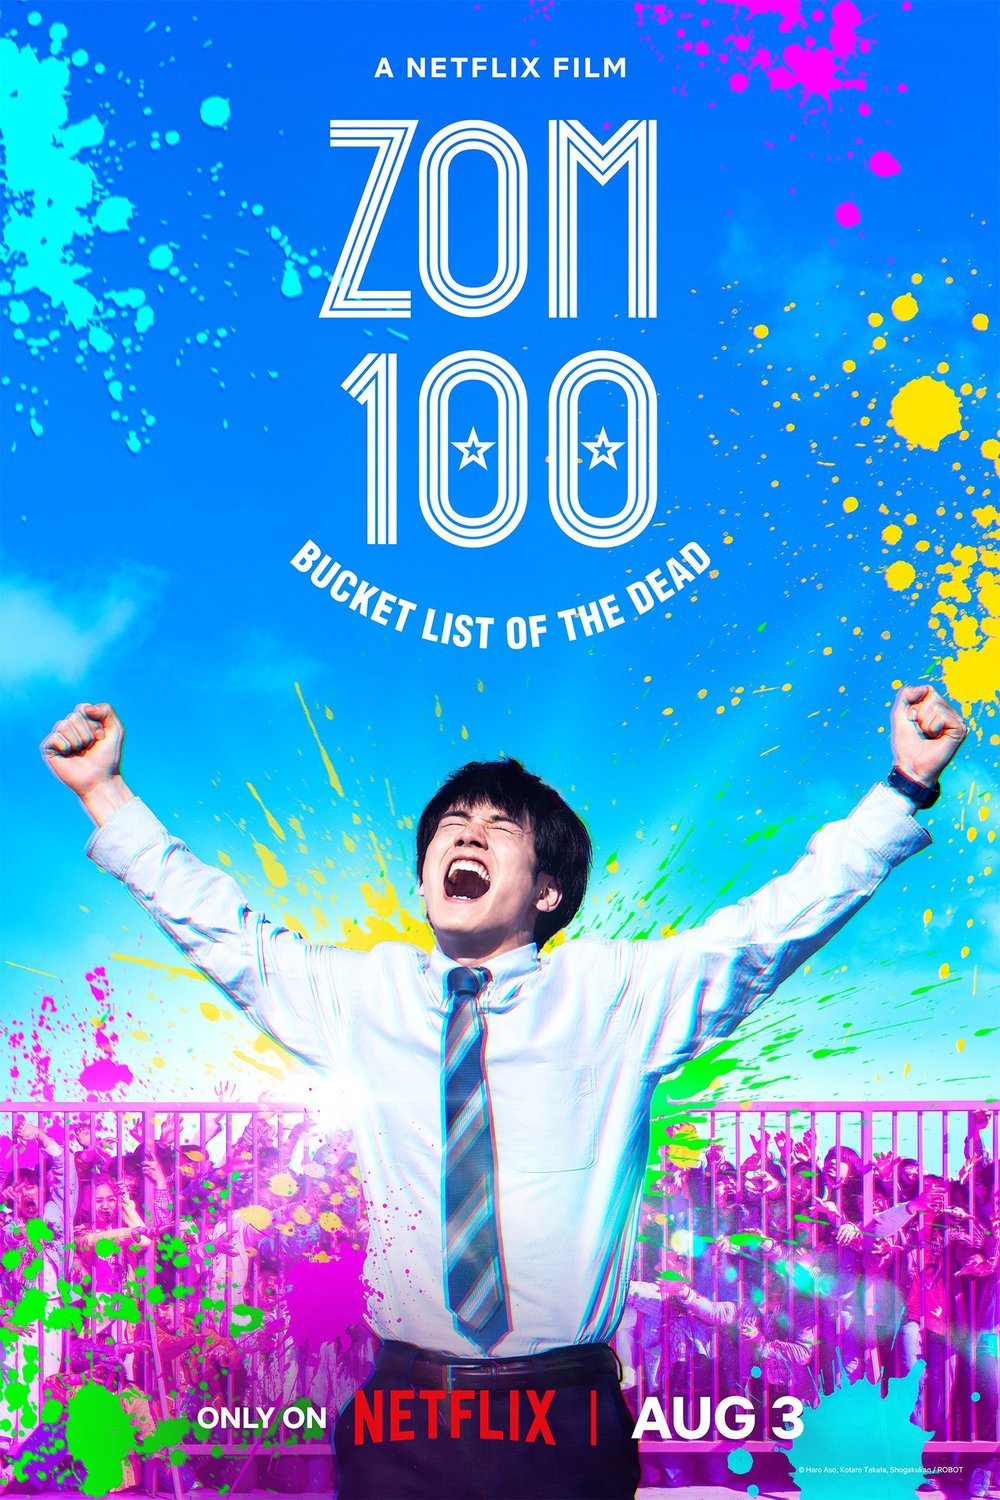 L'affiche originale du film Zom 100: Zombie ni Naru made ni Shitai 100 no Koto en japonais